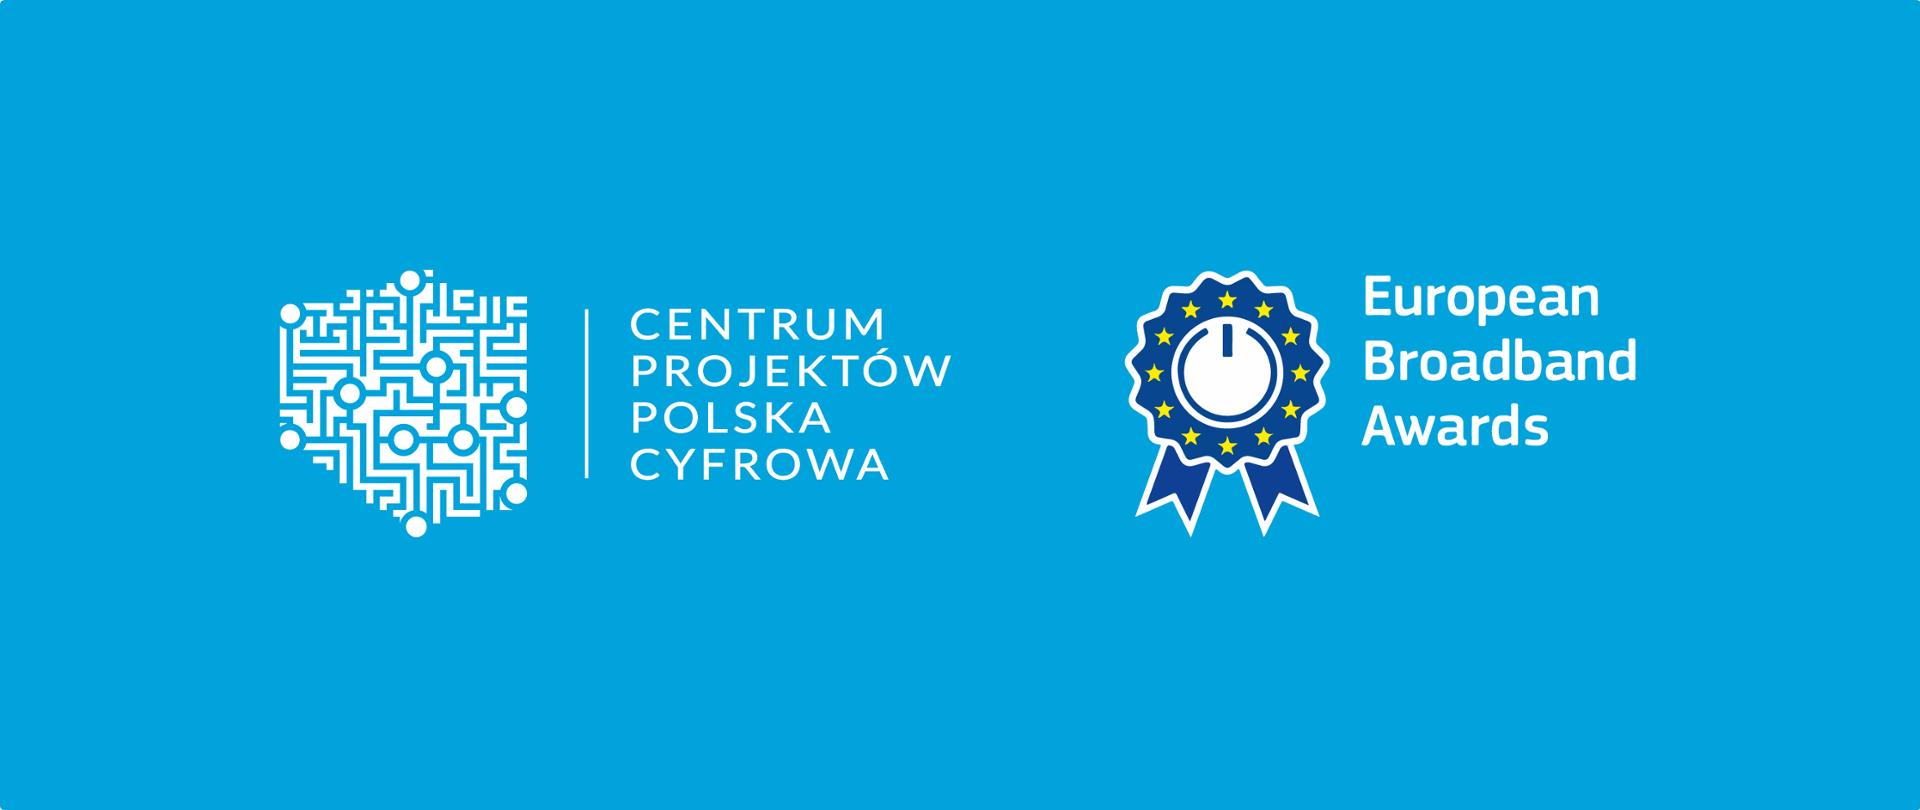 Centrum Projektów Polska Cyfrowa zwycięzcą European Broadband Awards 2022!